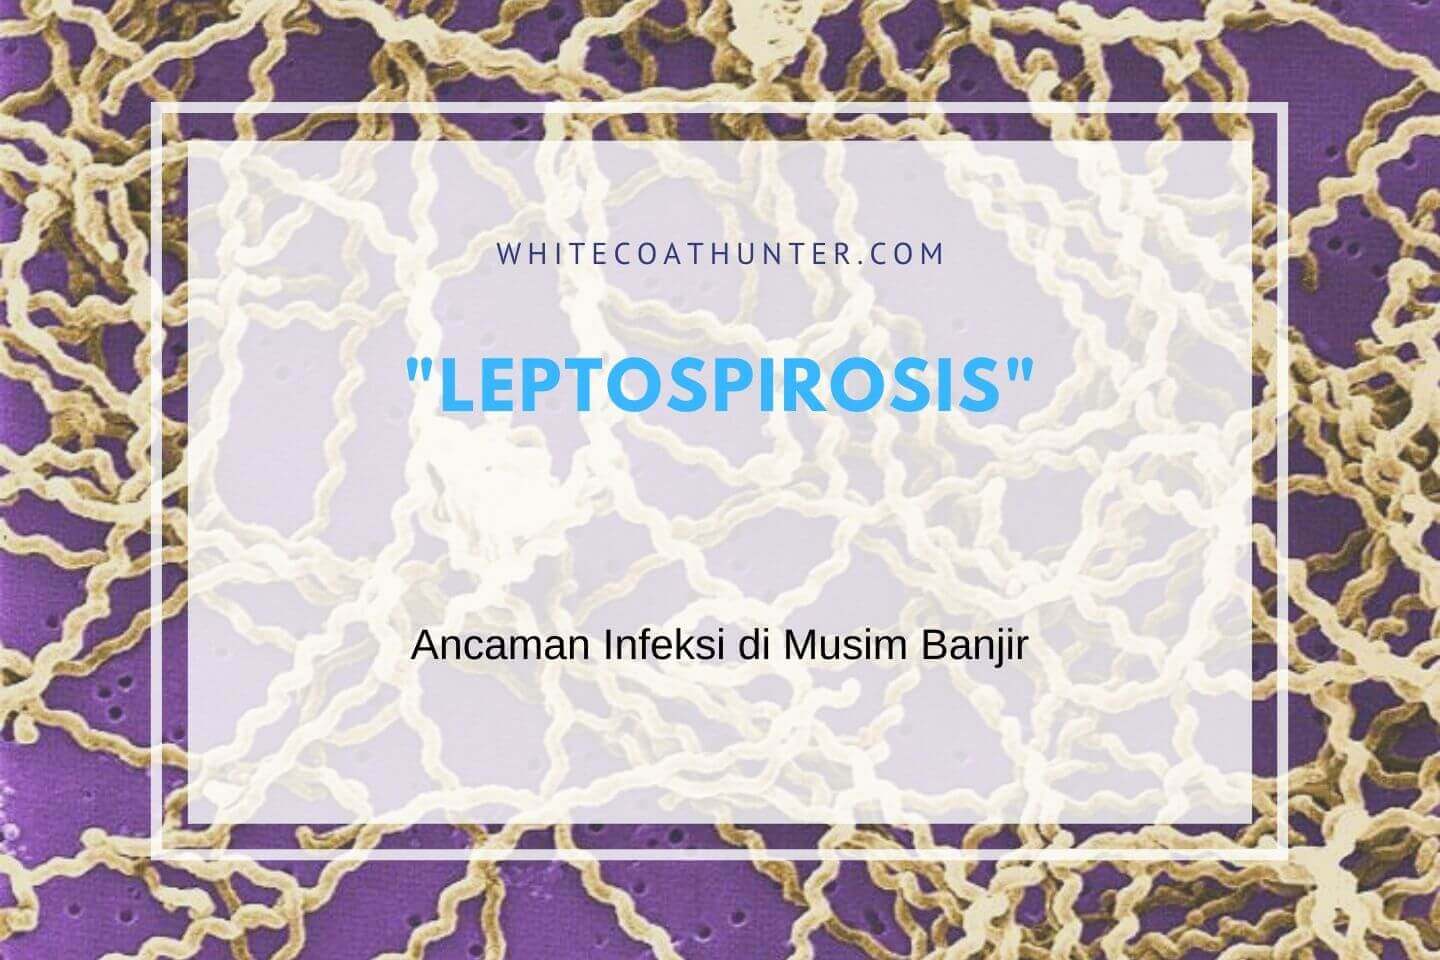 Leptospirosis: Ancaman Infeksi di Musim Banjir